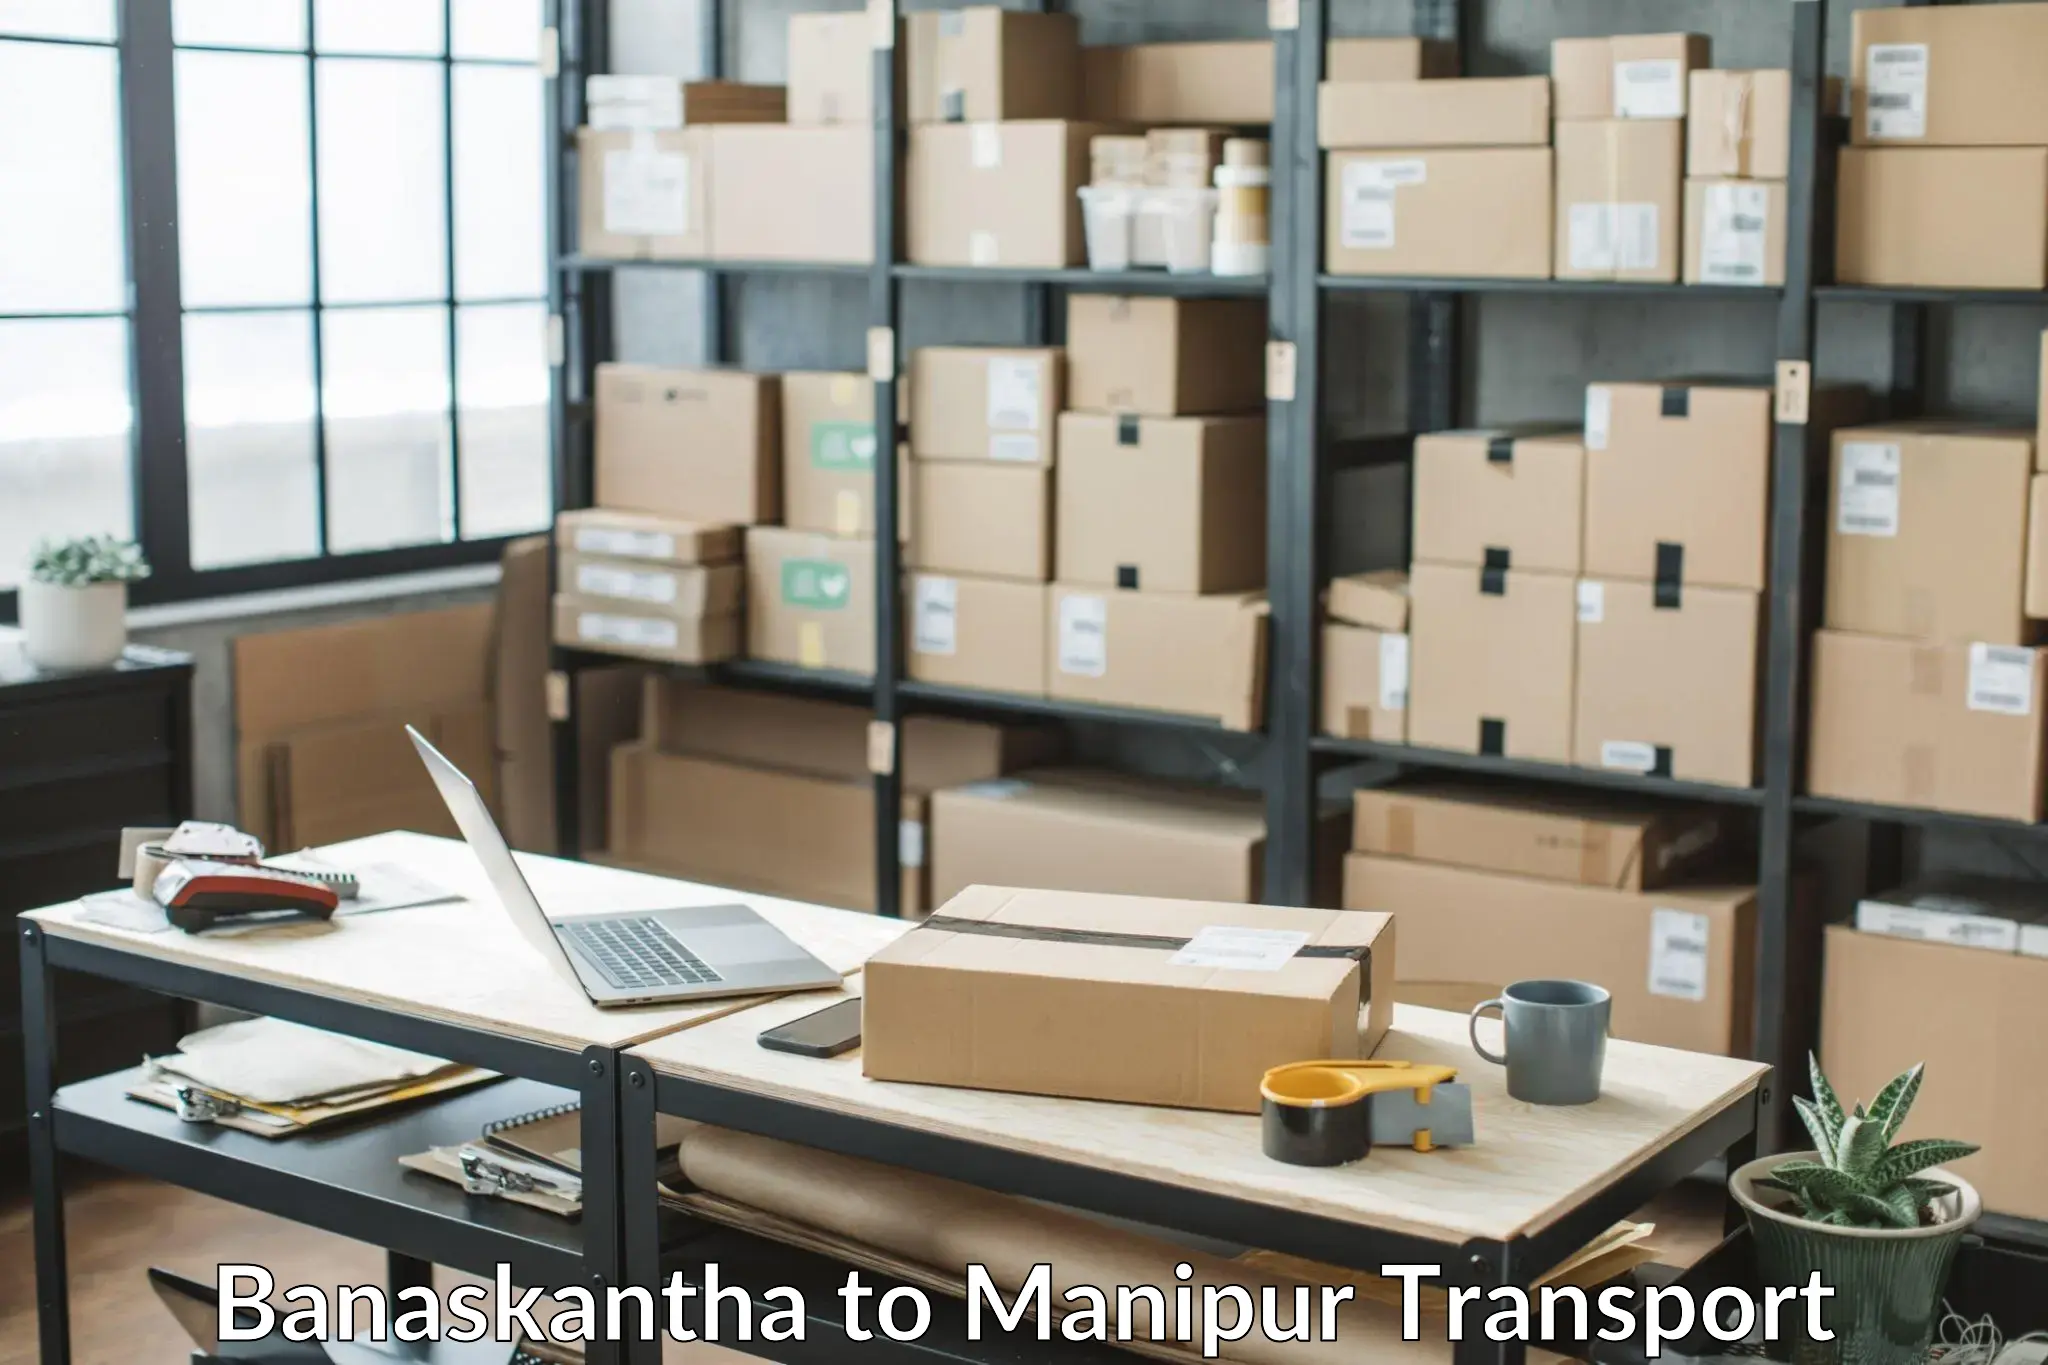 Cargo transport services Banaskantha to Moirang